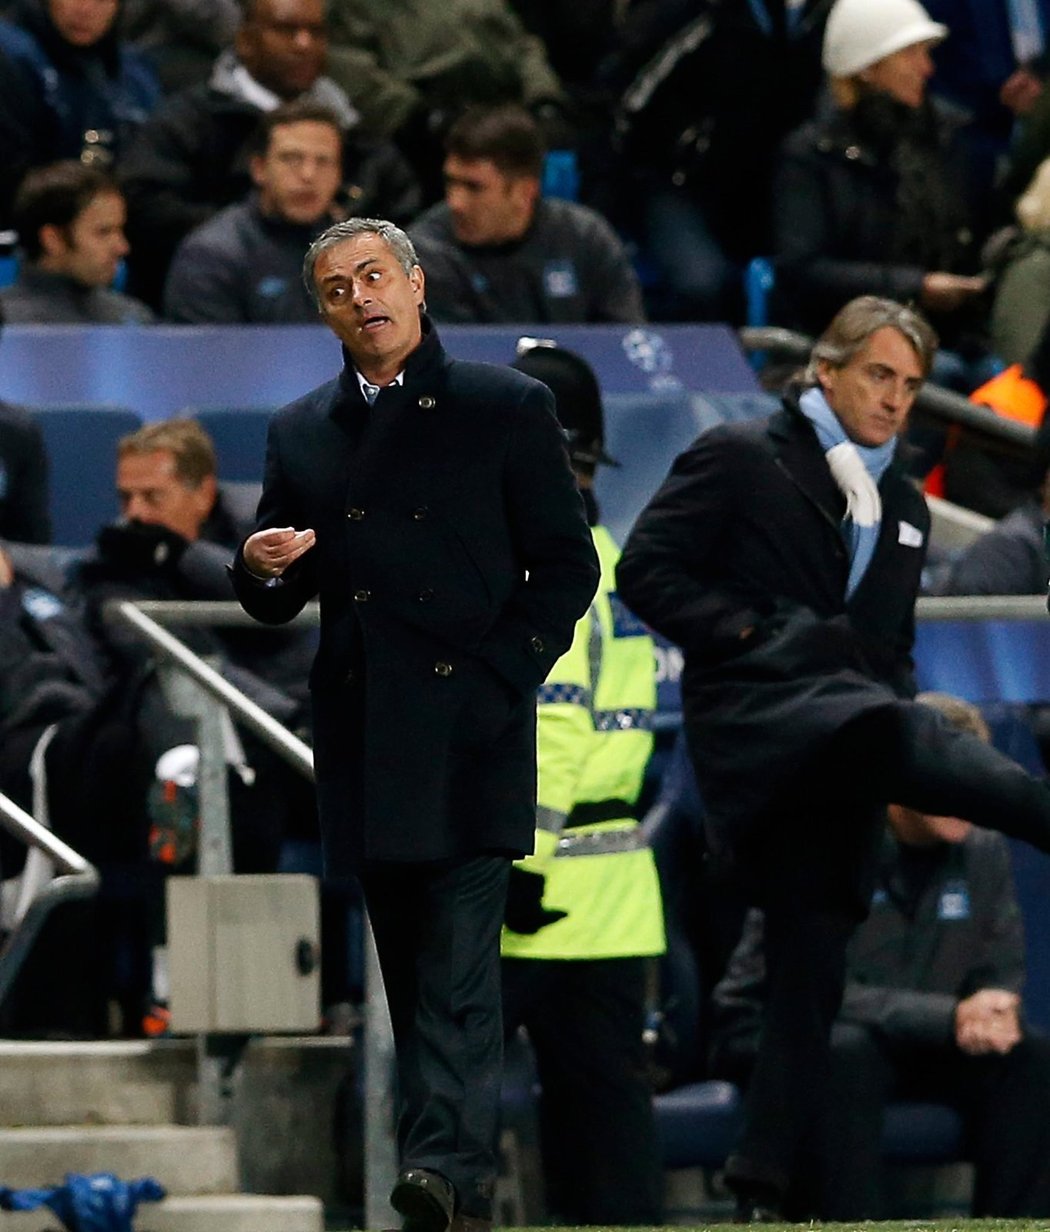 Ve středečním šlágru Ligy mistrů se střetly dvě výrazné trenérské osobnosti. José Mourinho z Realu Madrid a Roberto Mancini trénující Manchester City.